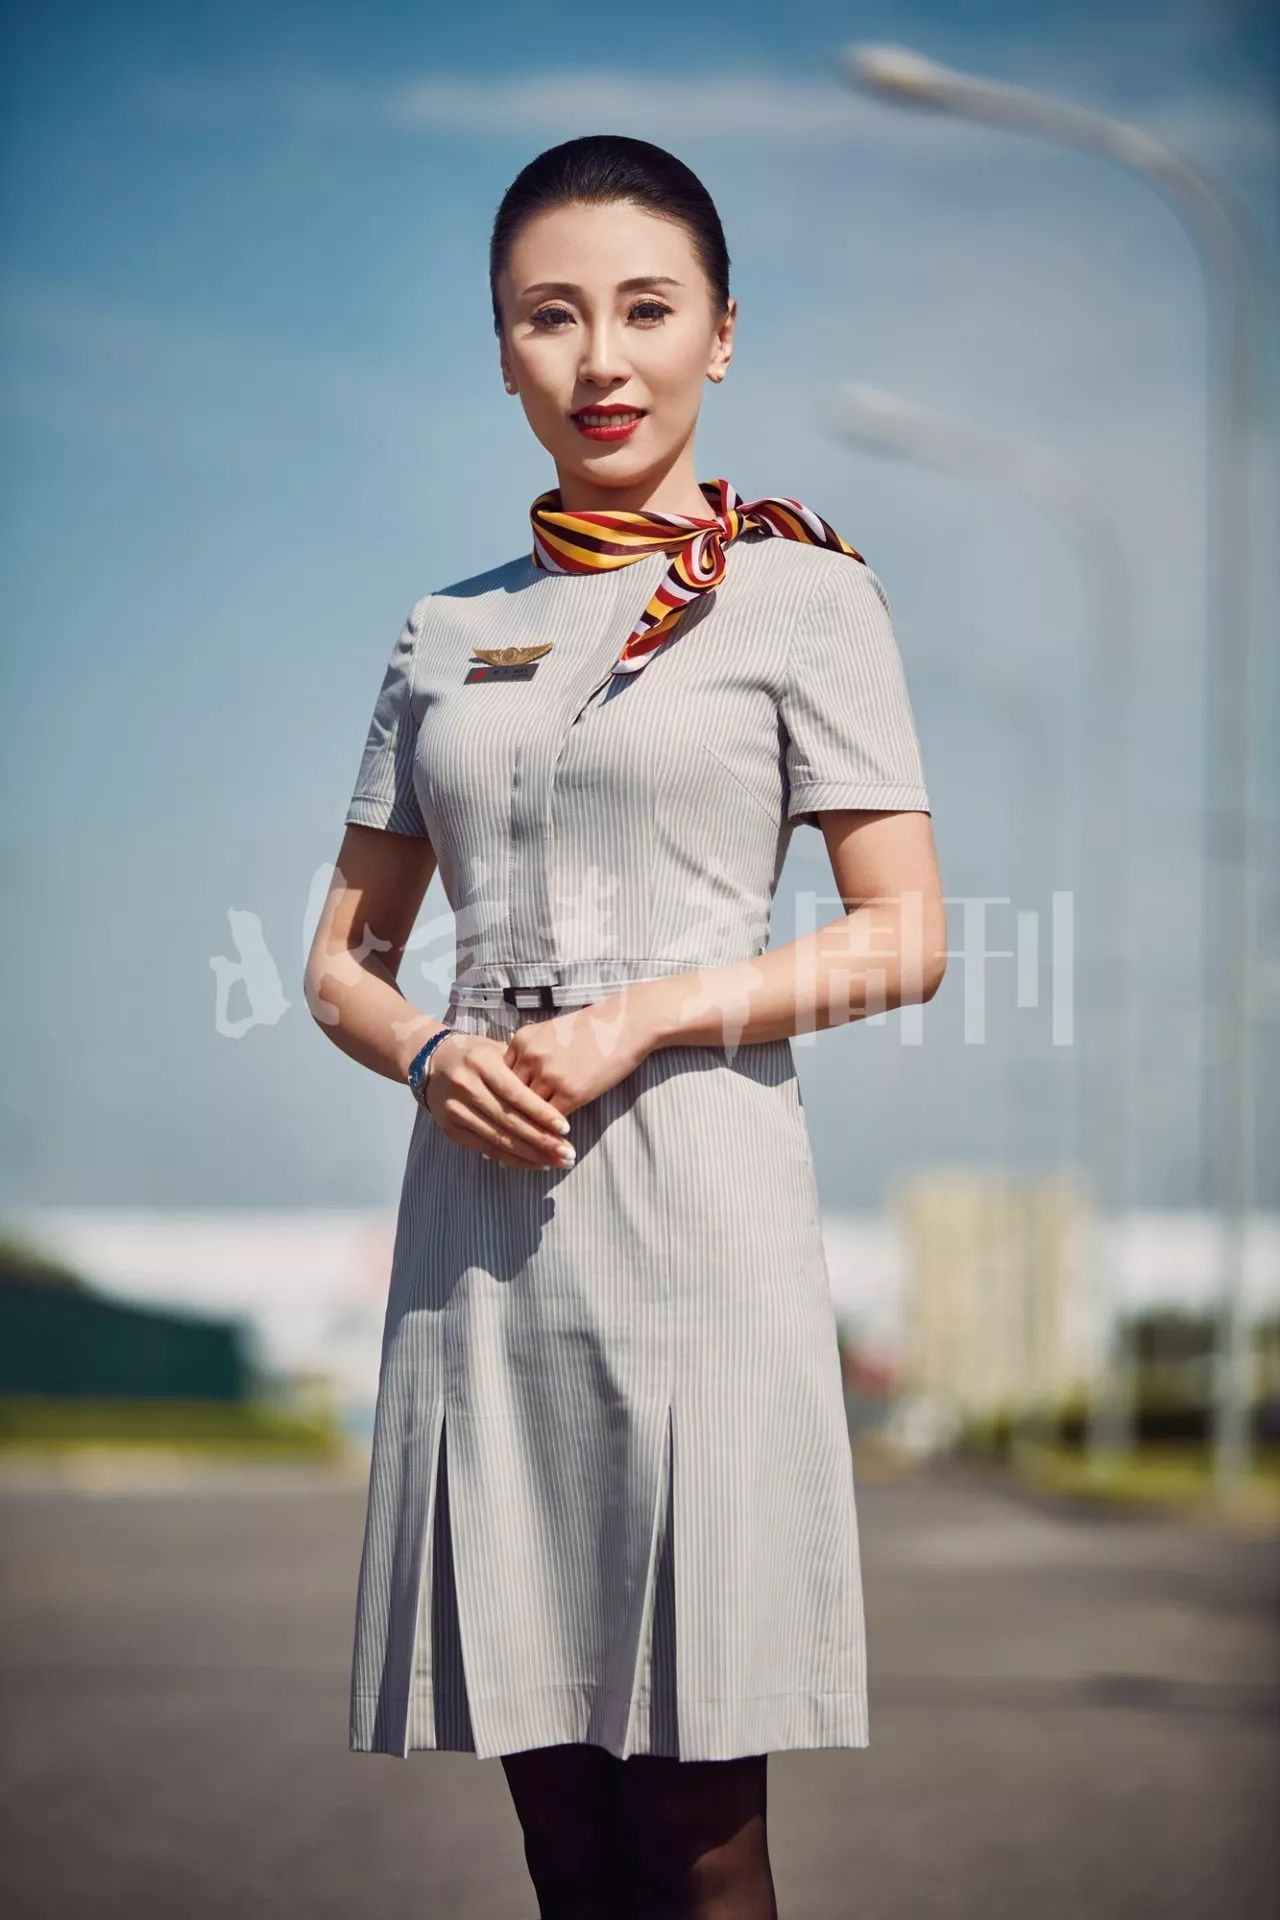 北京首都机场空姐图片